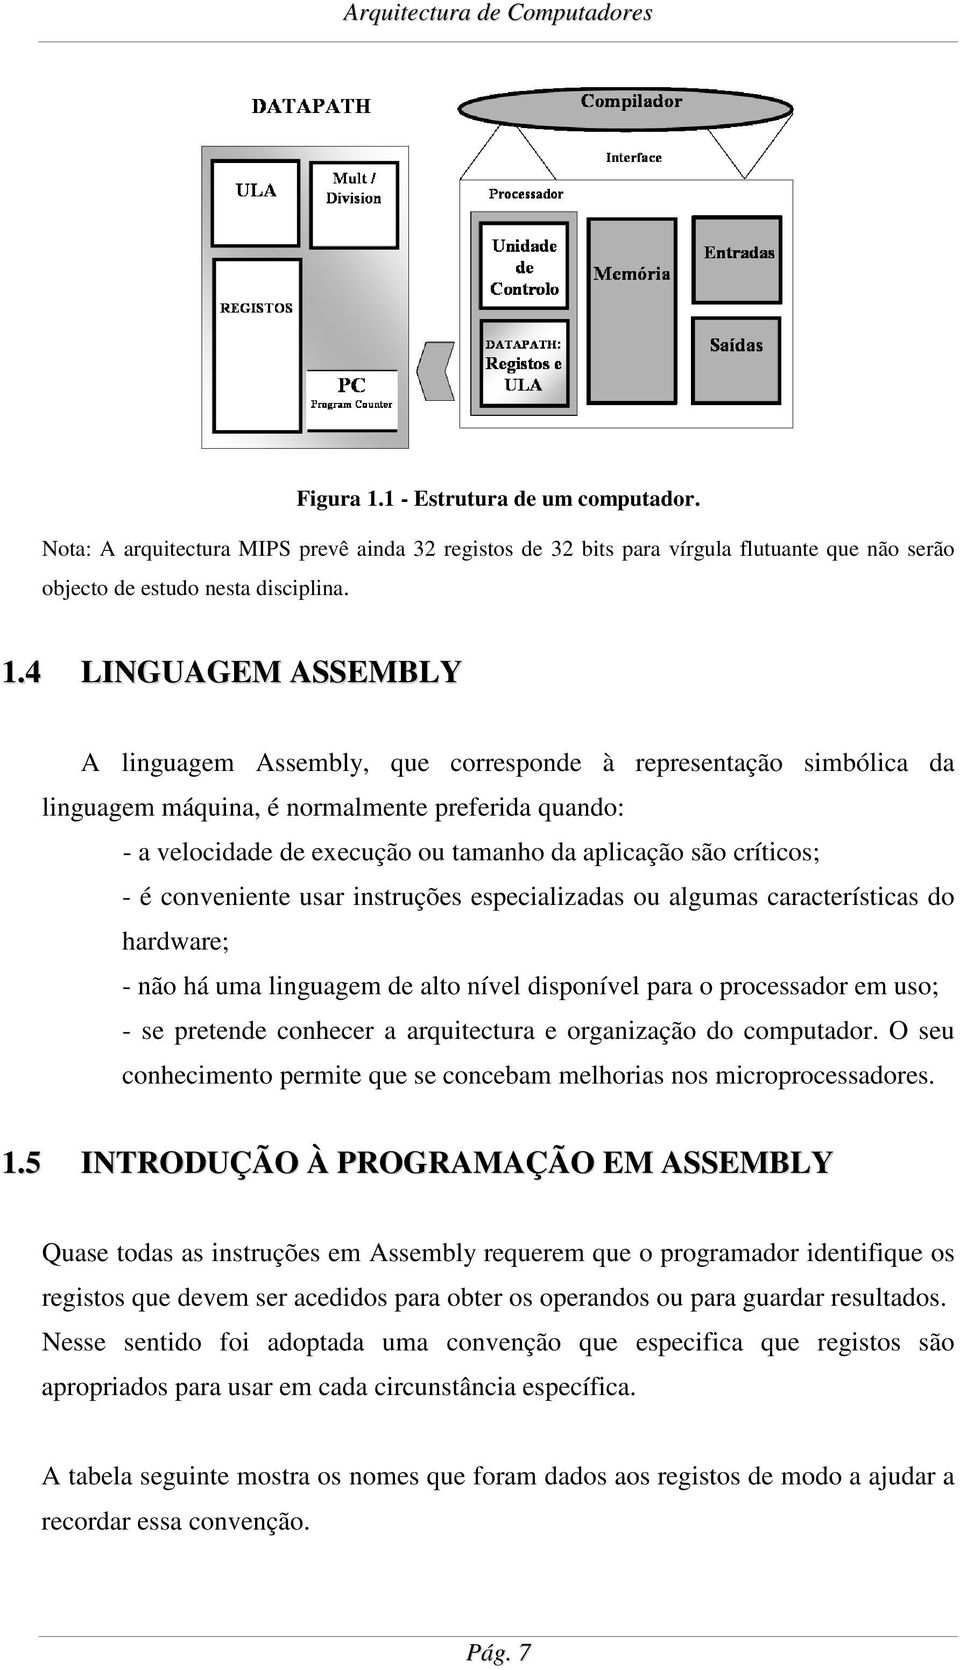 4 LINGUAGEM ASSEMBLY A linguagem Assembly, que corresponde à representação simbólica da linguagem máquina, é normalmente preferida quando: - a velocidade de execução ou tamanho da aplicação são